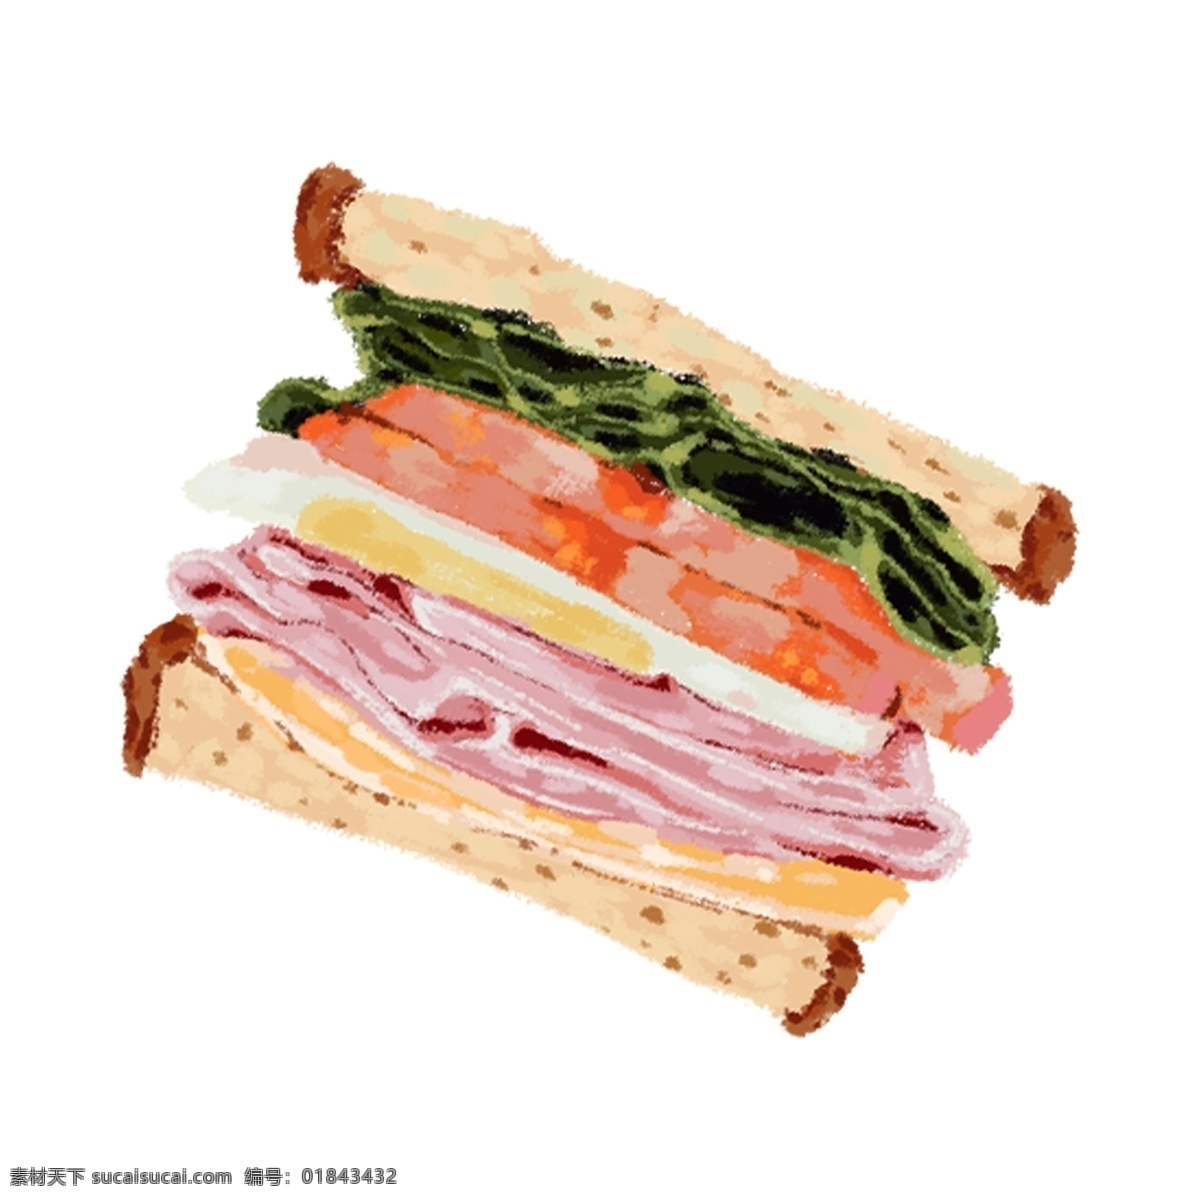 原创 手绘 插画 早餐 三明治